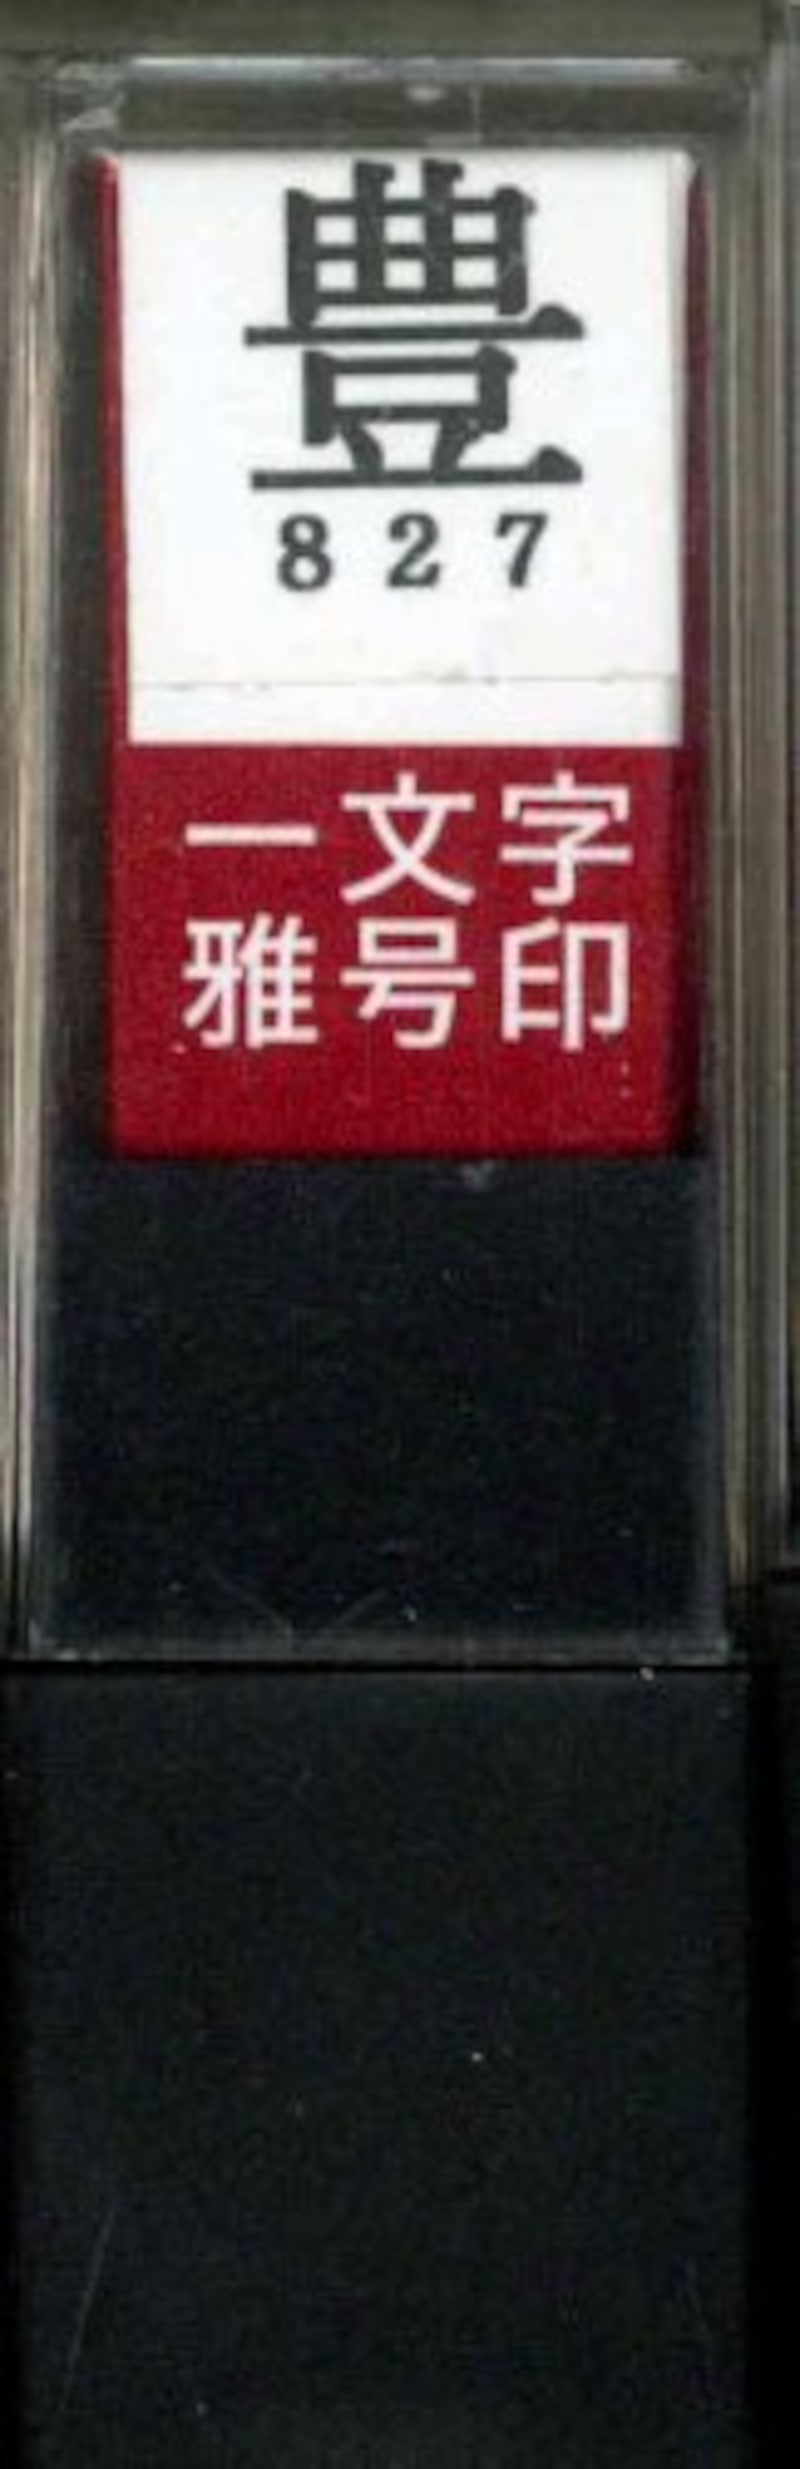 墨運堂,朱文「豊」 雅号印,29827